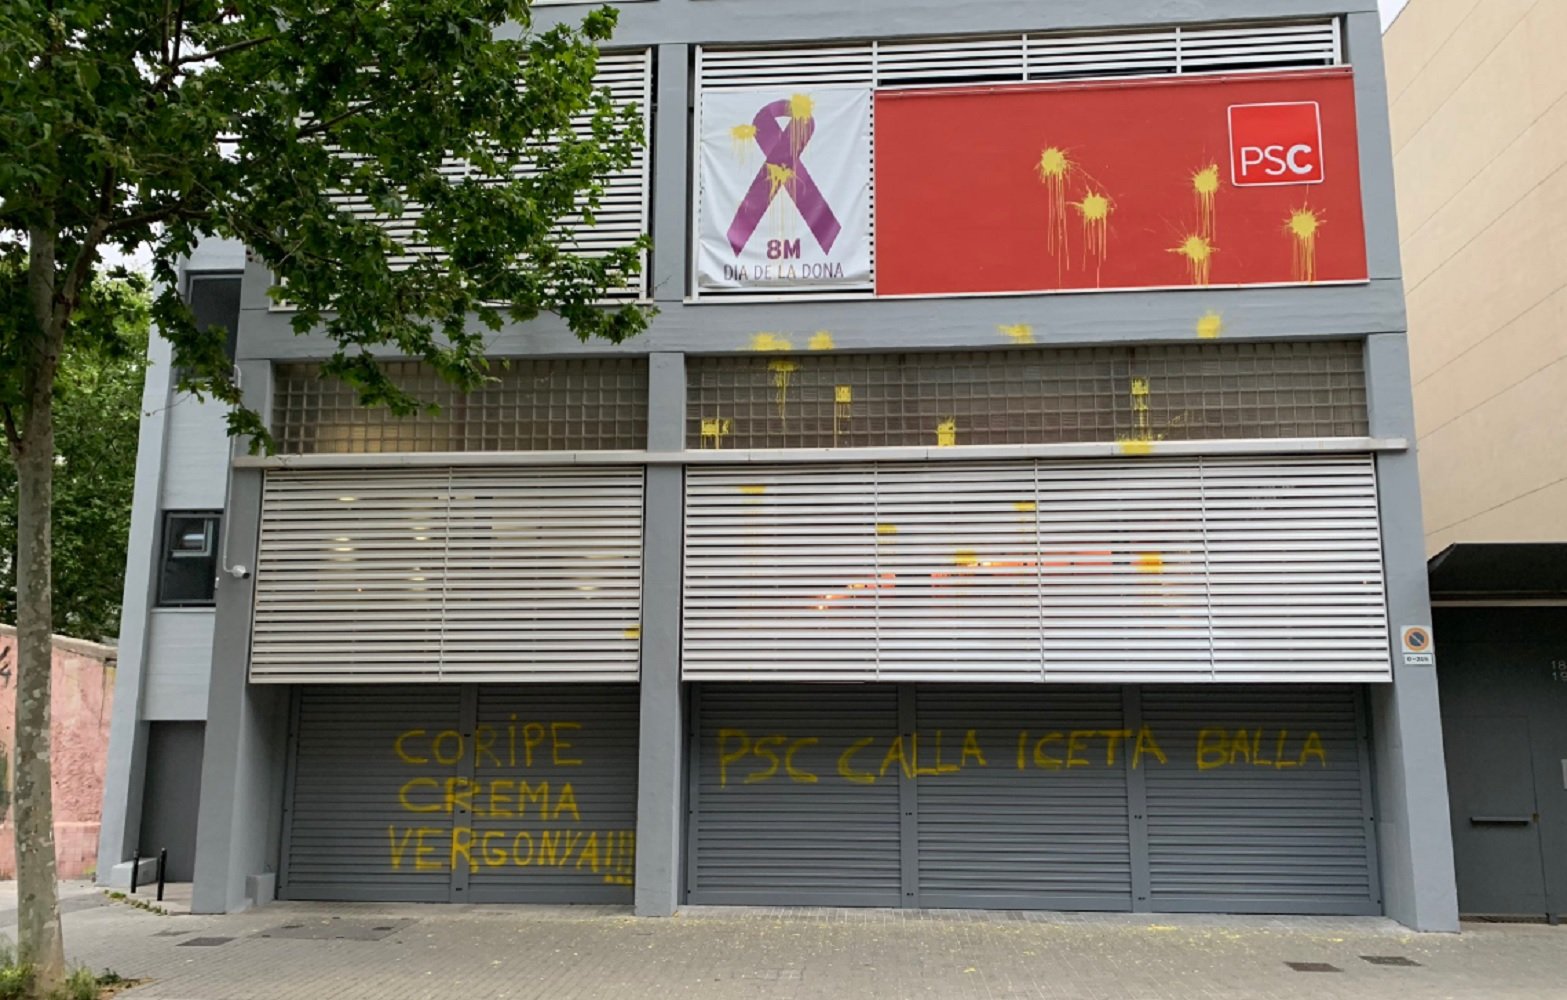 Pintades amb al·lusions a Coripe a la seu del PSC a Barcelona